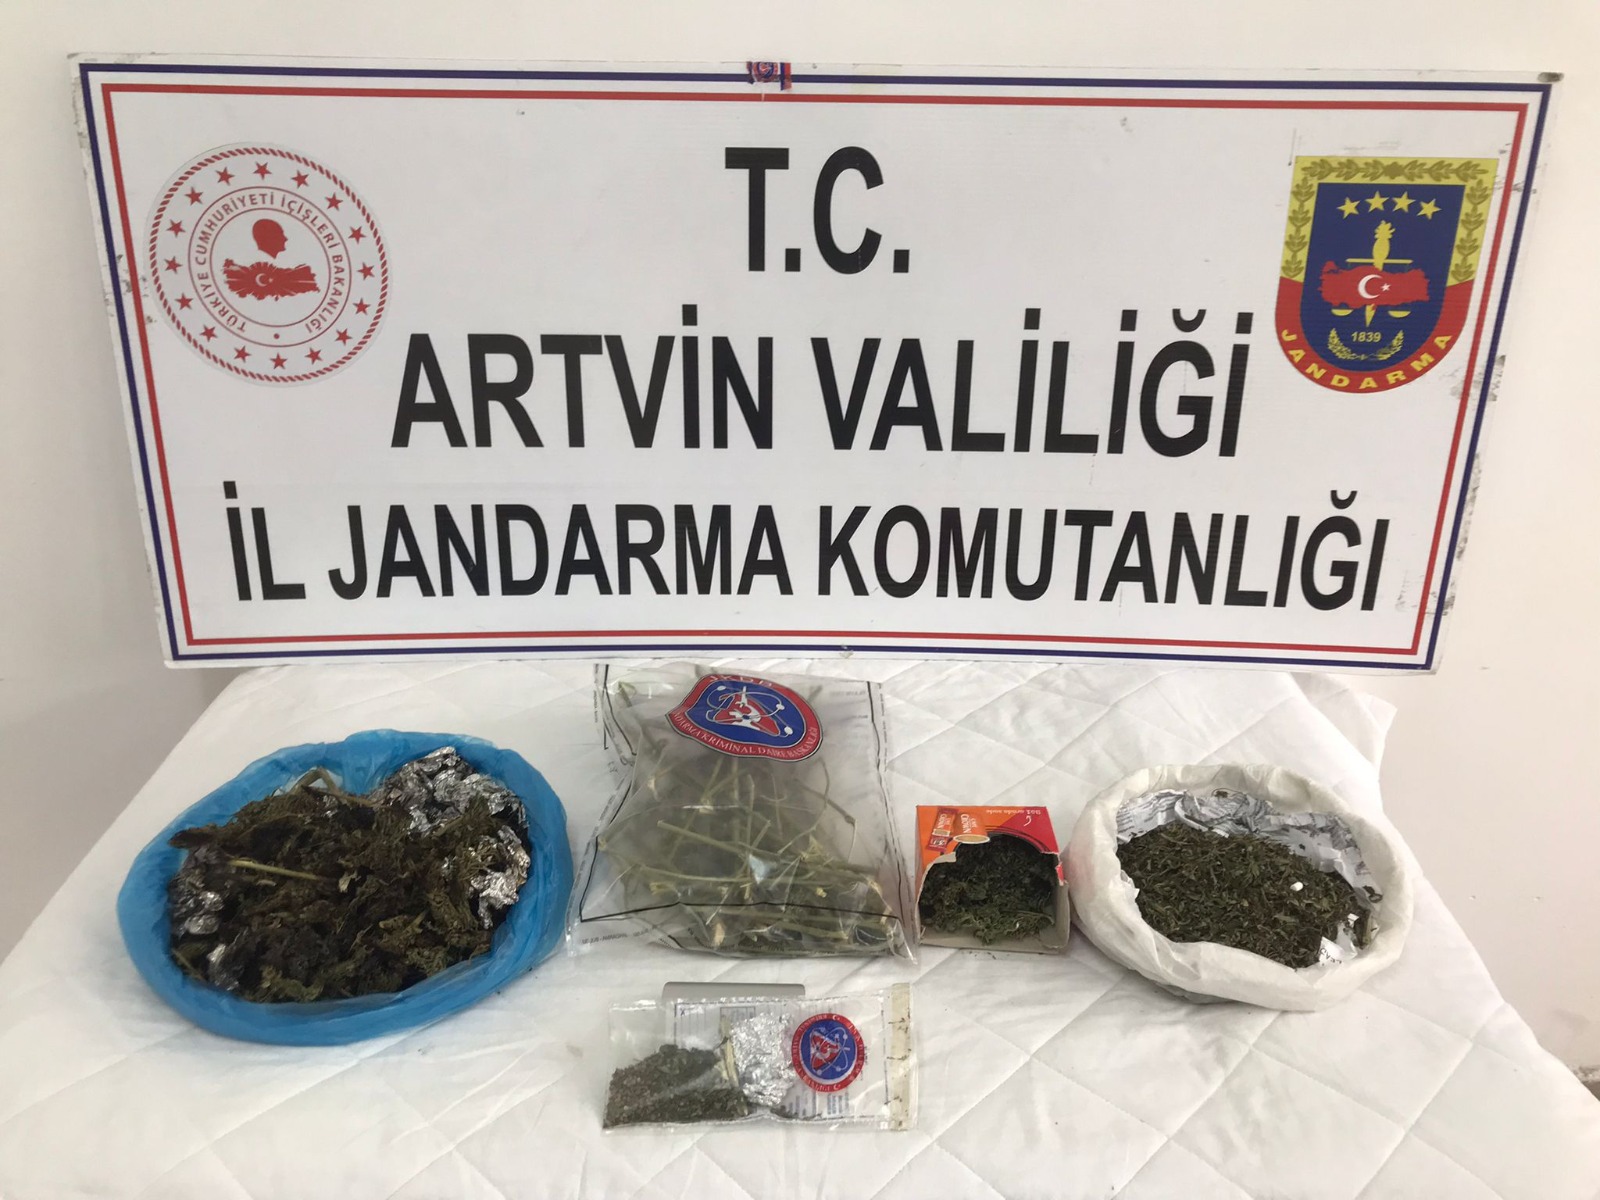 Artvin'de jandarmanın uyuşturucu operasyonunda 3 kişi gözaltına alındı